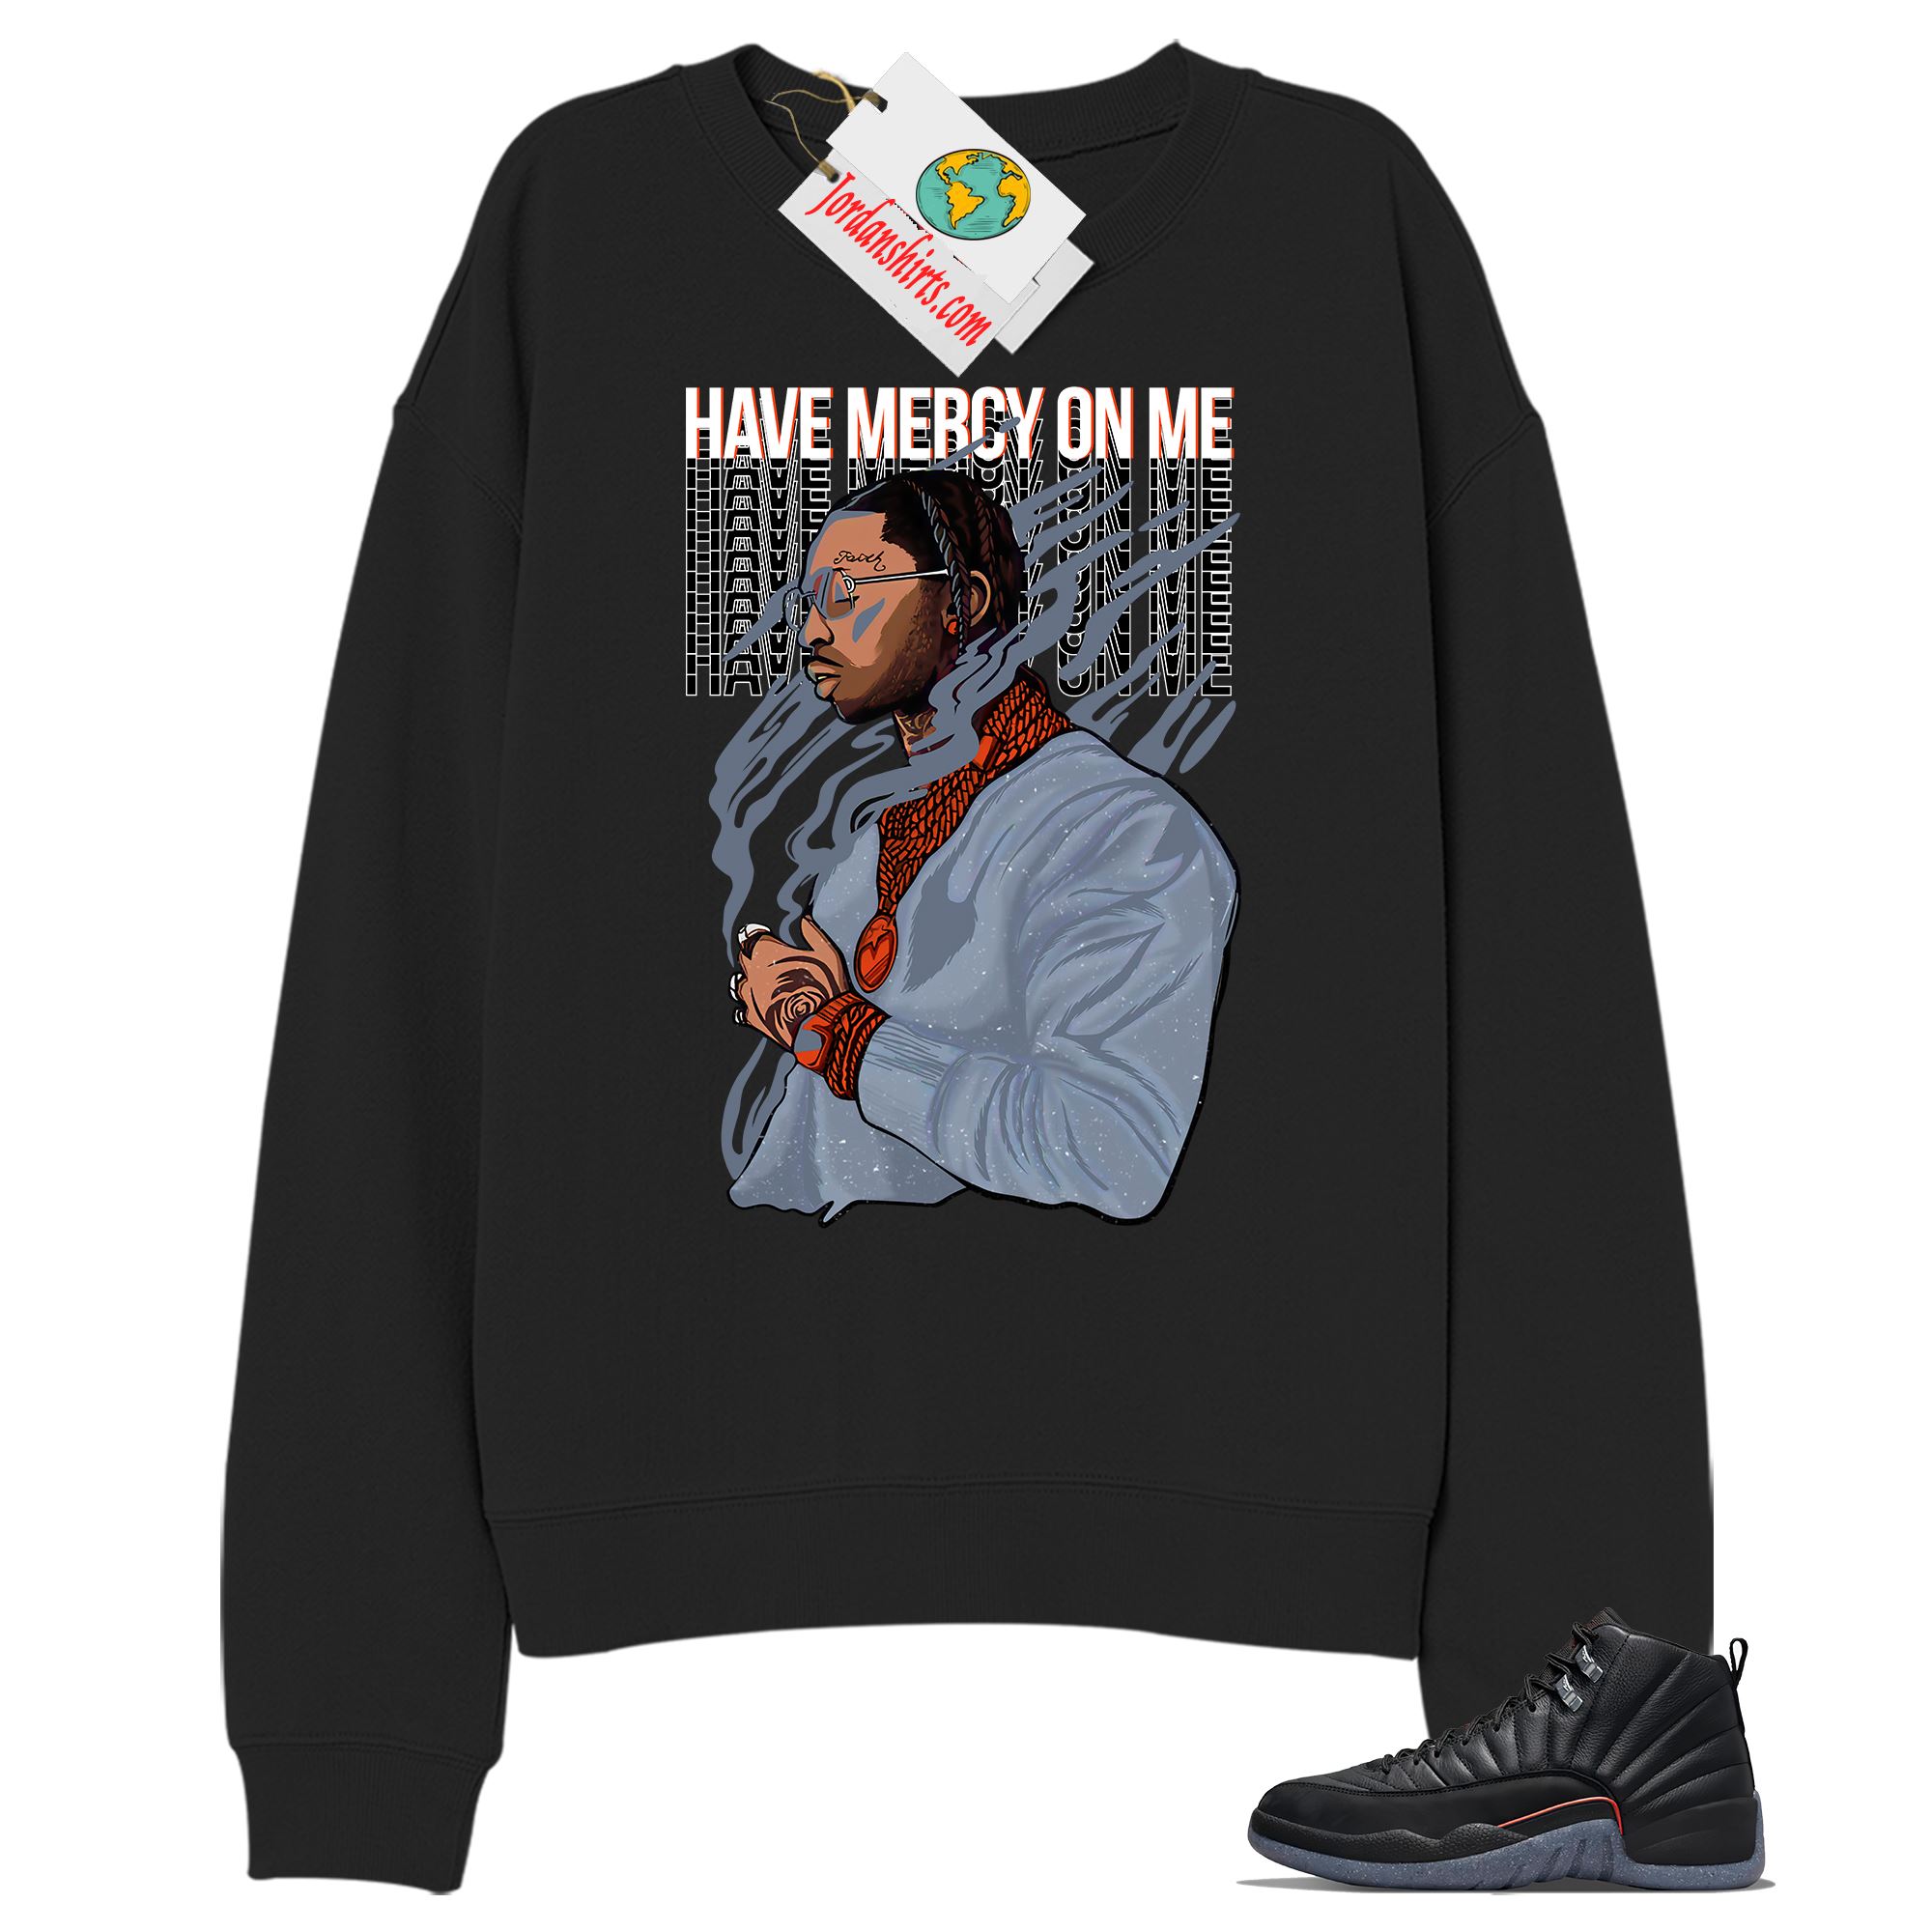 Jordan 12 Sweatshirt, Have Mercy On Me Black Sweatshirt Air Jordan 12 Utility Grind 12s Plus Size Up To 5xl